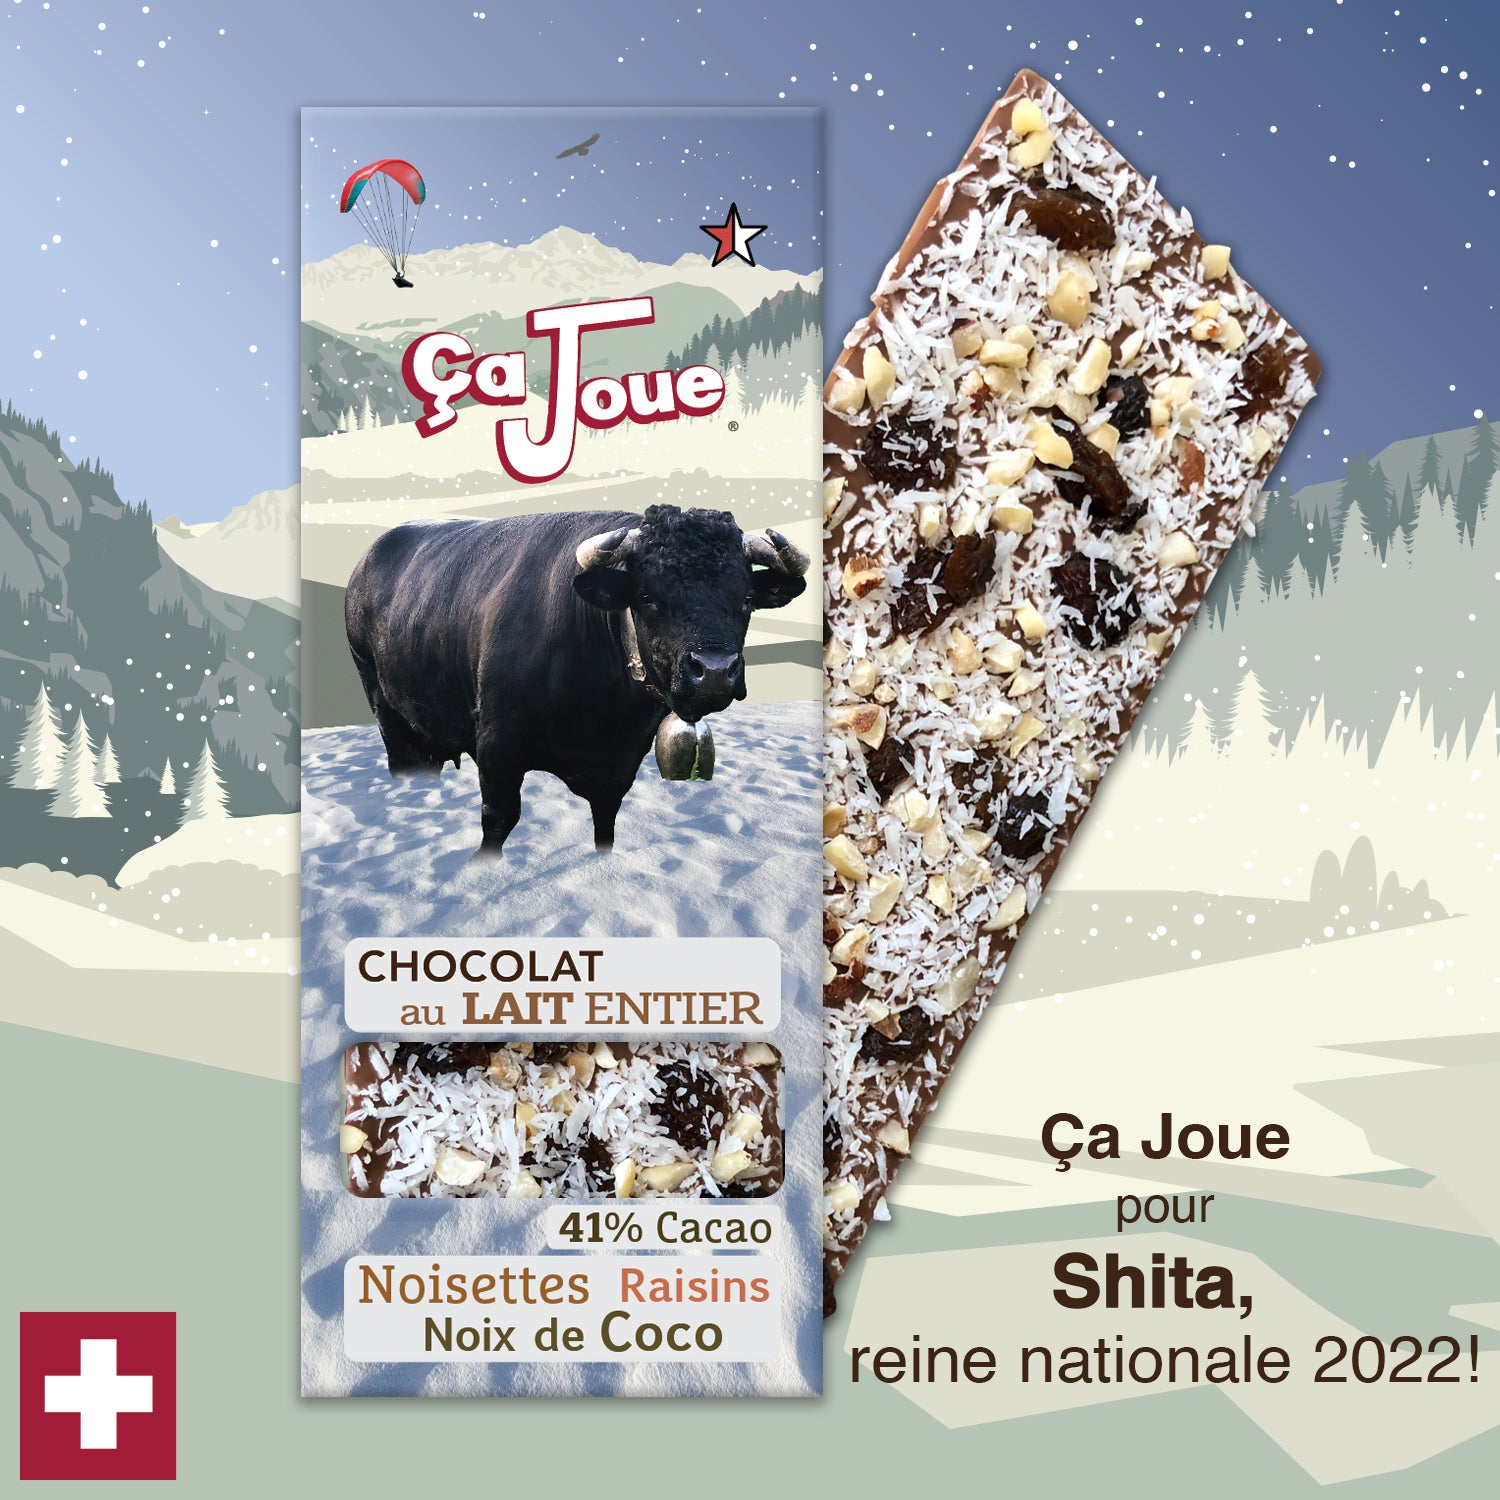 Ça Joue for Queen Shita (Ref-BL5) Milk Chocolate from Val de Bagnes